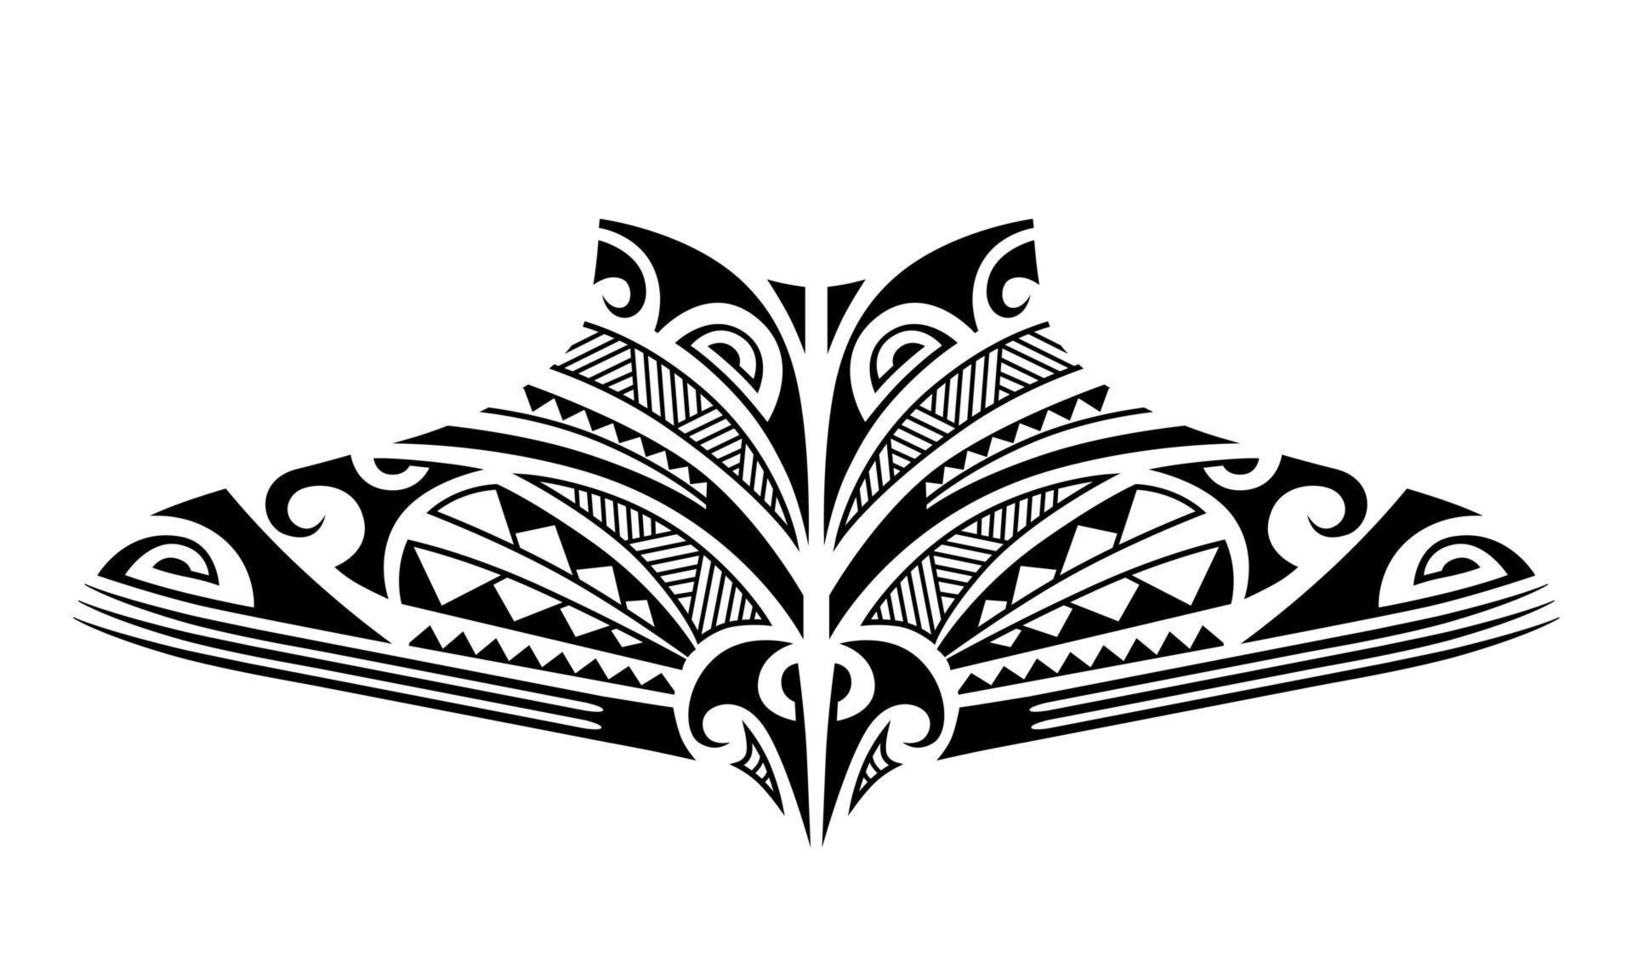 maori tattoo schets. tribale tatoeage in etno-stijl voor nek, rug, borst. vector